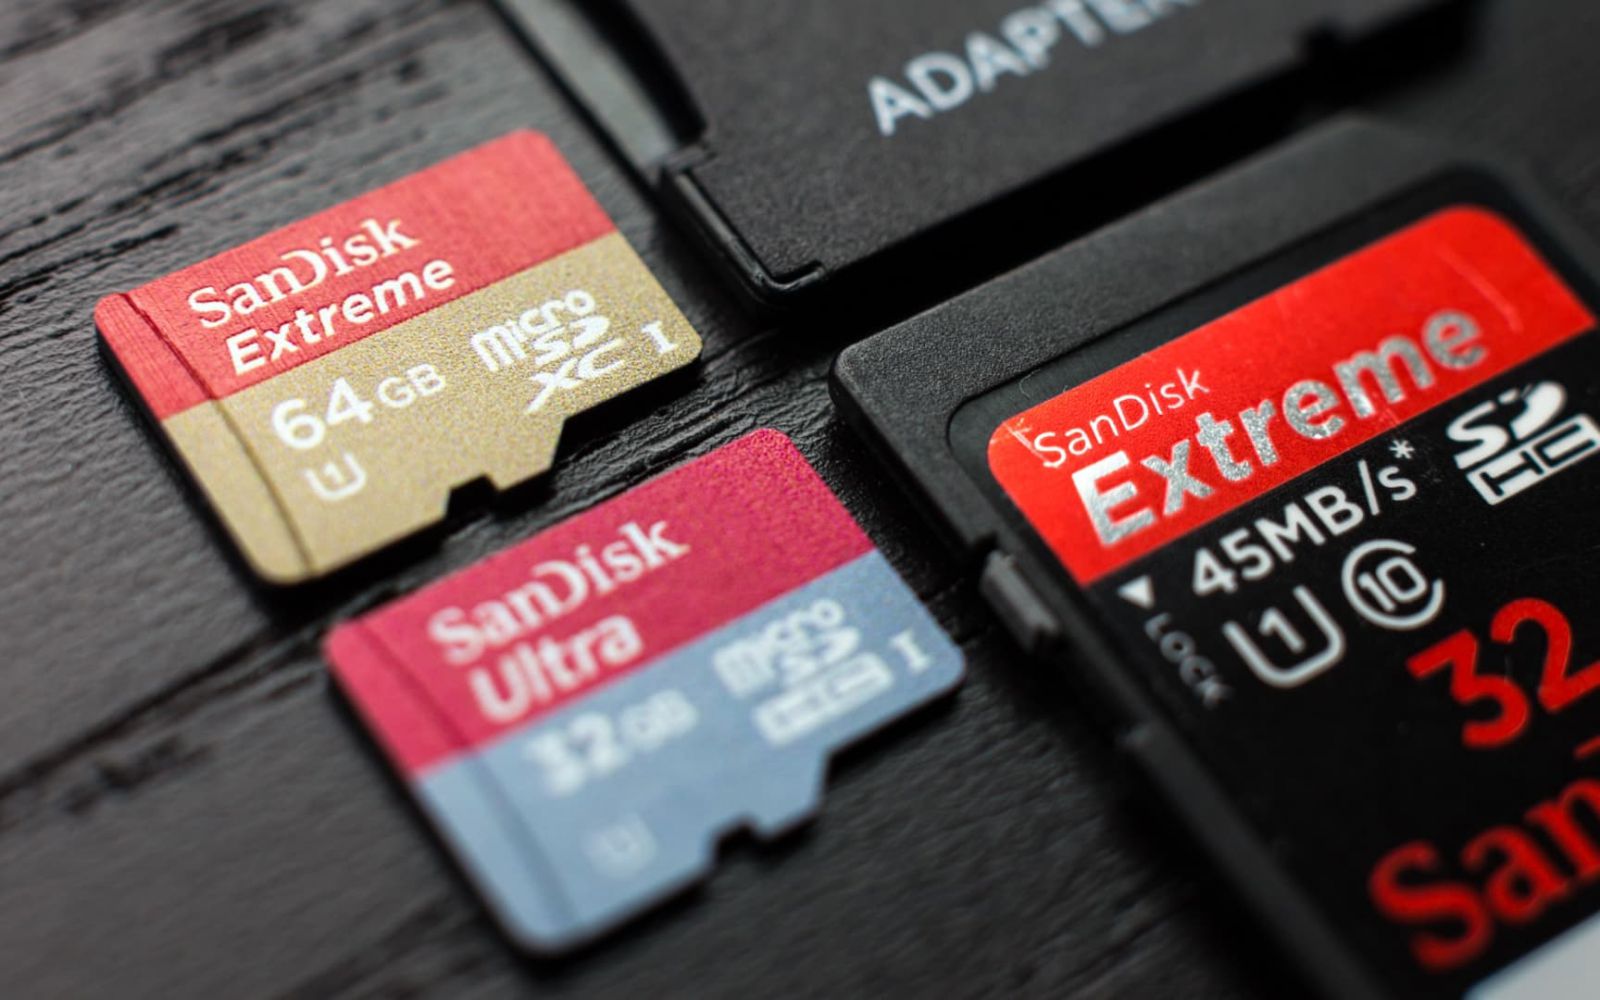 Bổ sung bộ nhớ bằng thẻ MicroSD cũng có thể là một cách hiệu quả